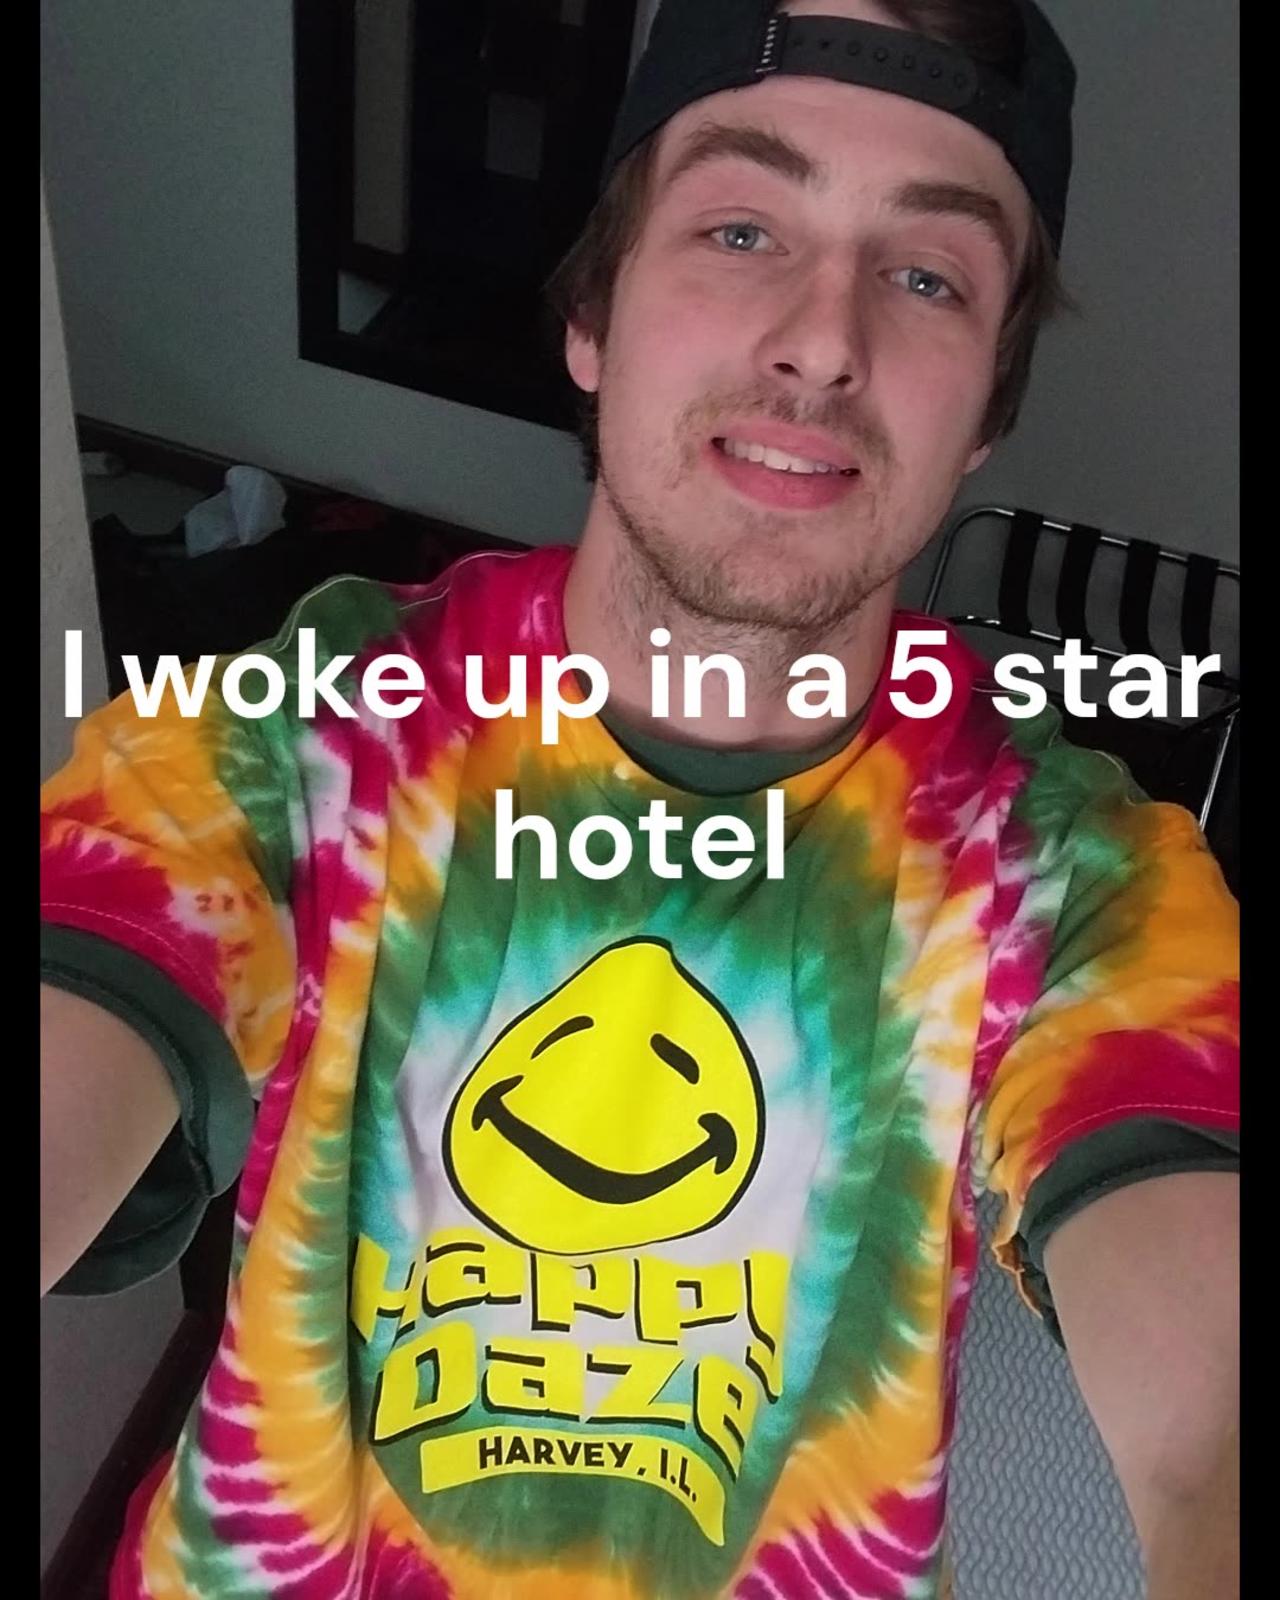 I WOKE UP IN A 5 STAR HOTEL